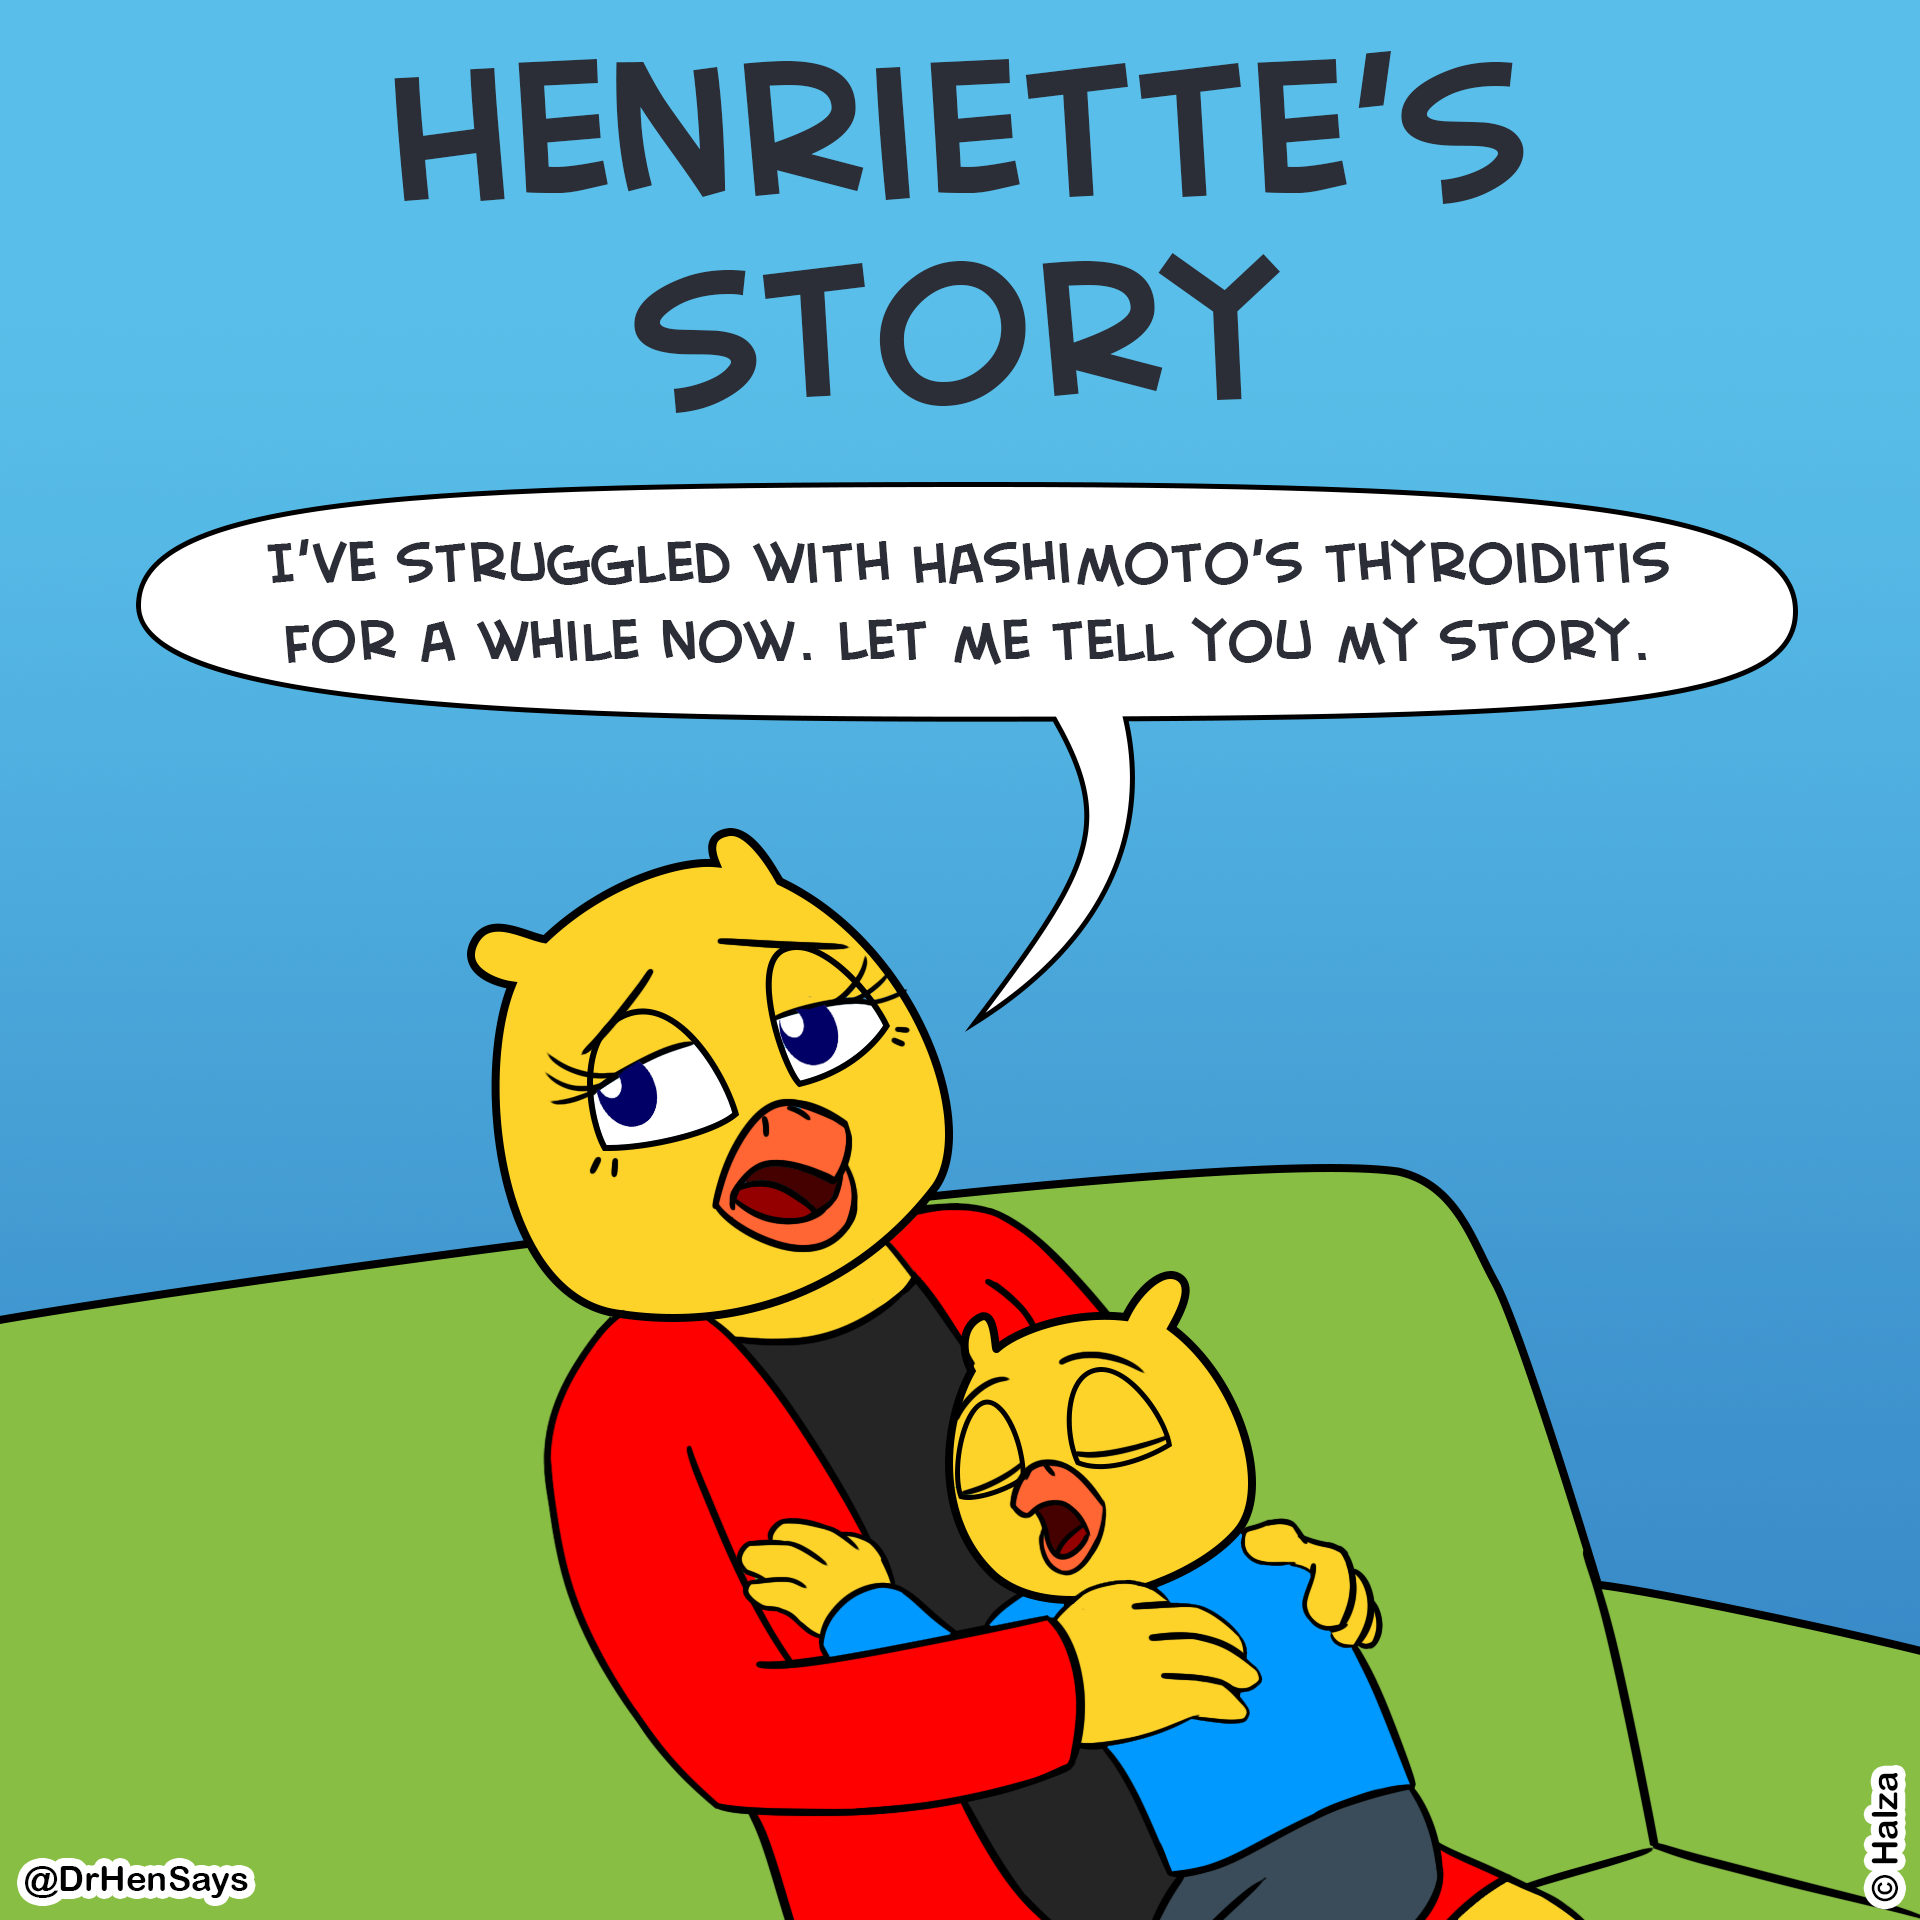 Henriette's Story